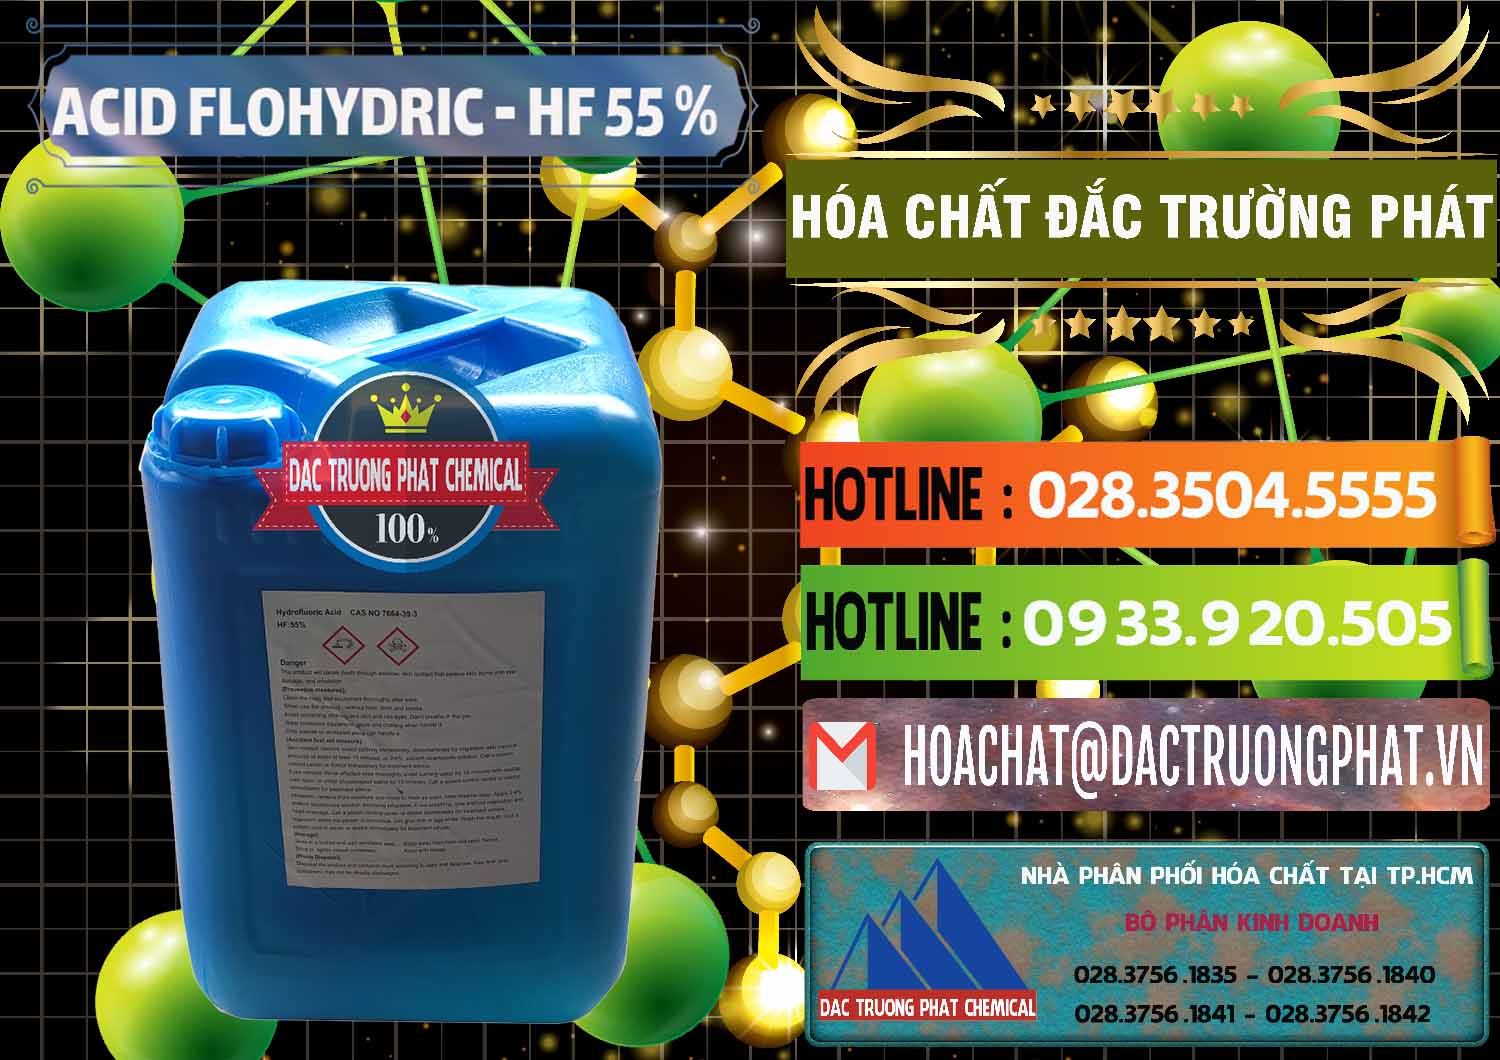 Nơi bán & phân phối Axit HF - Acid HF 55% Can Xanh Trung Quốc China - 0080 - Nhập khẩu ( phân phối ) hóa chất tại TP.HCM - cungcaphoachat.com.vn